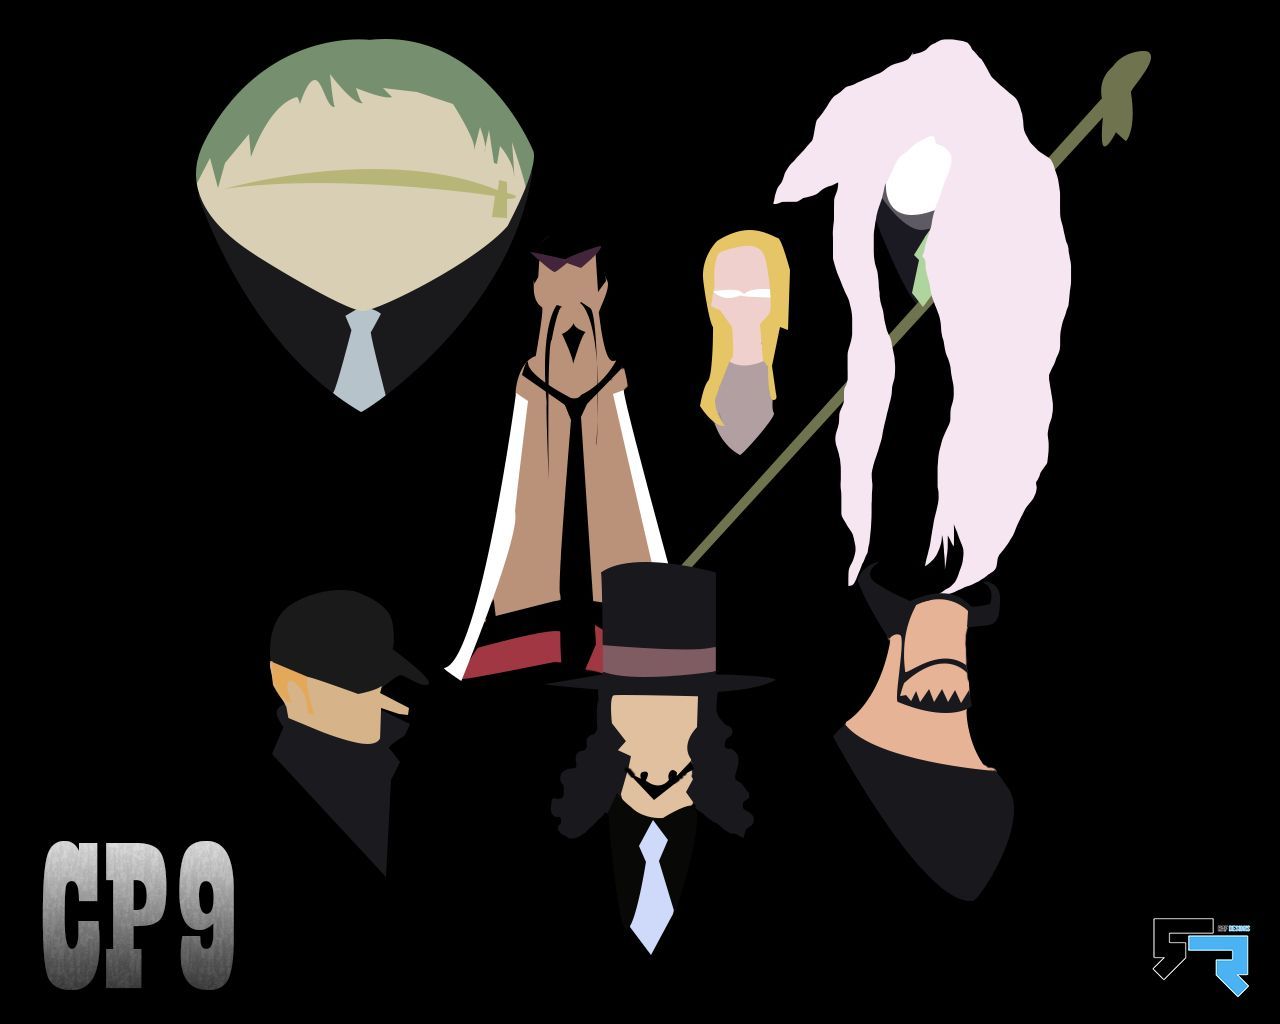 6747 - ¿Reconoces a todos y cada uno de los miembros del CP9 de One Piece?